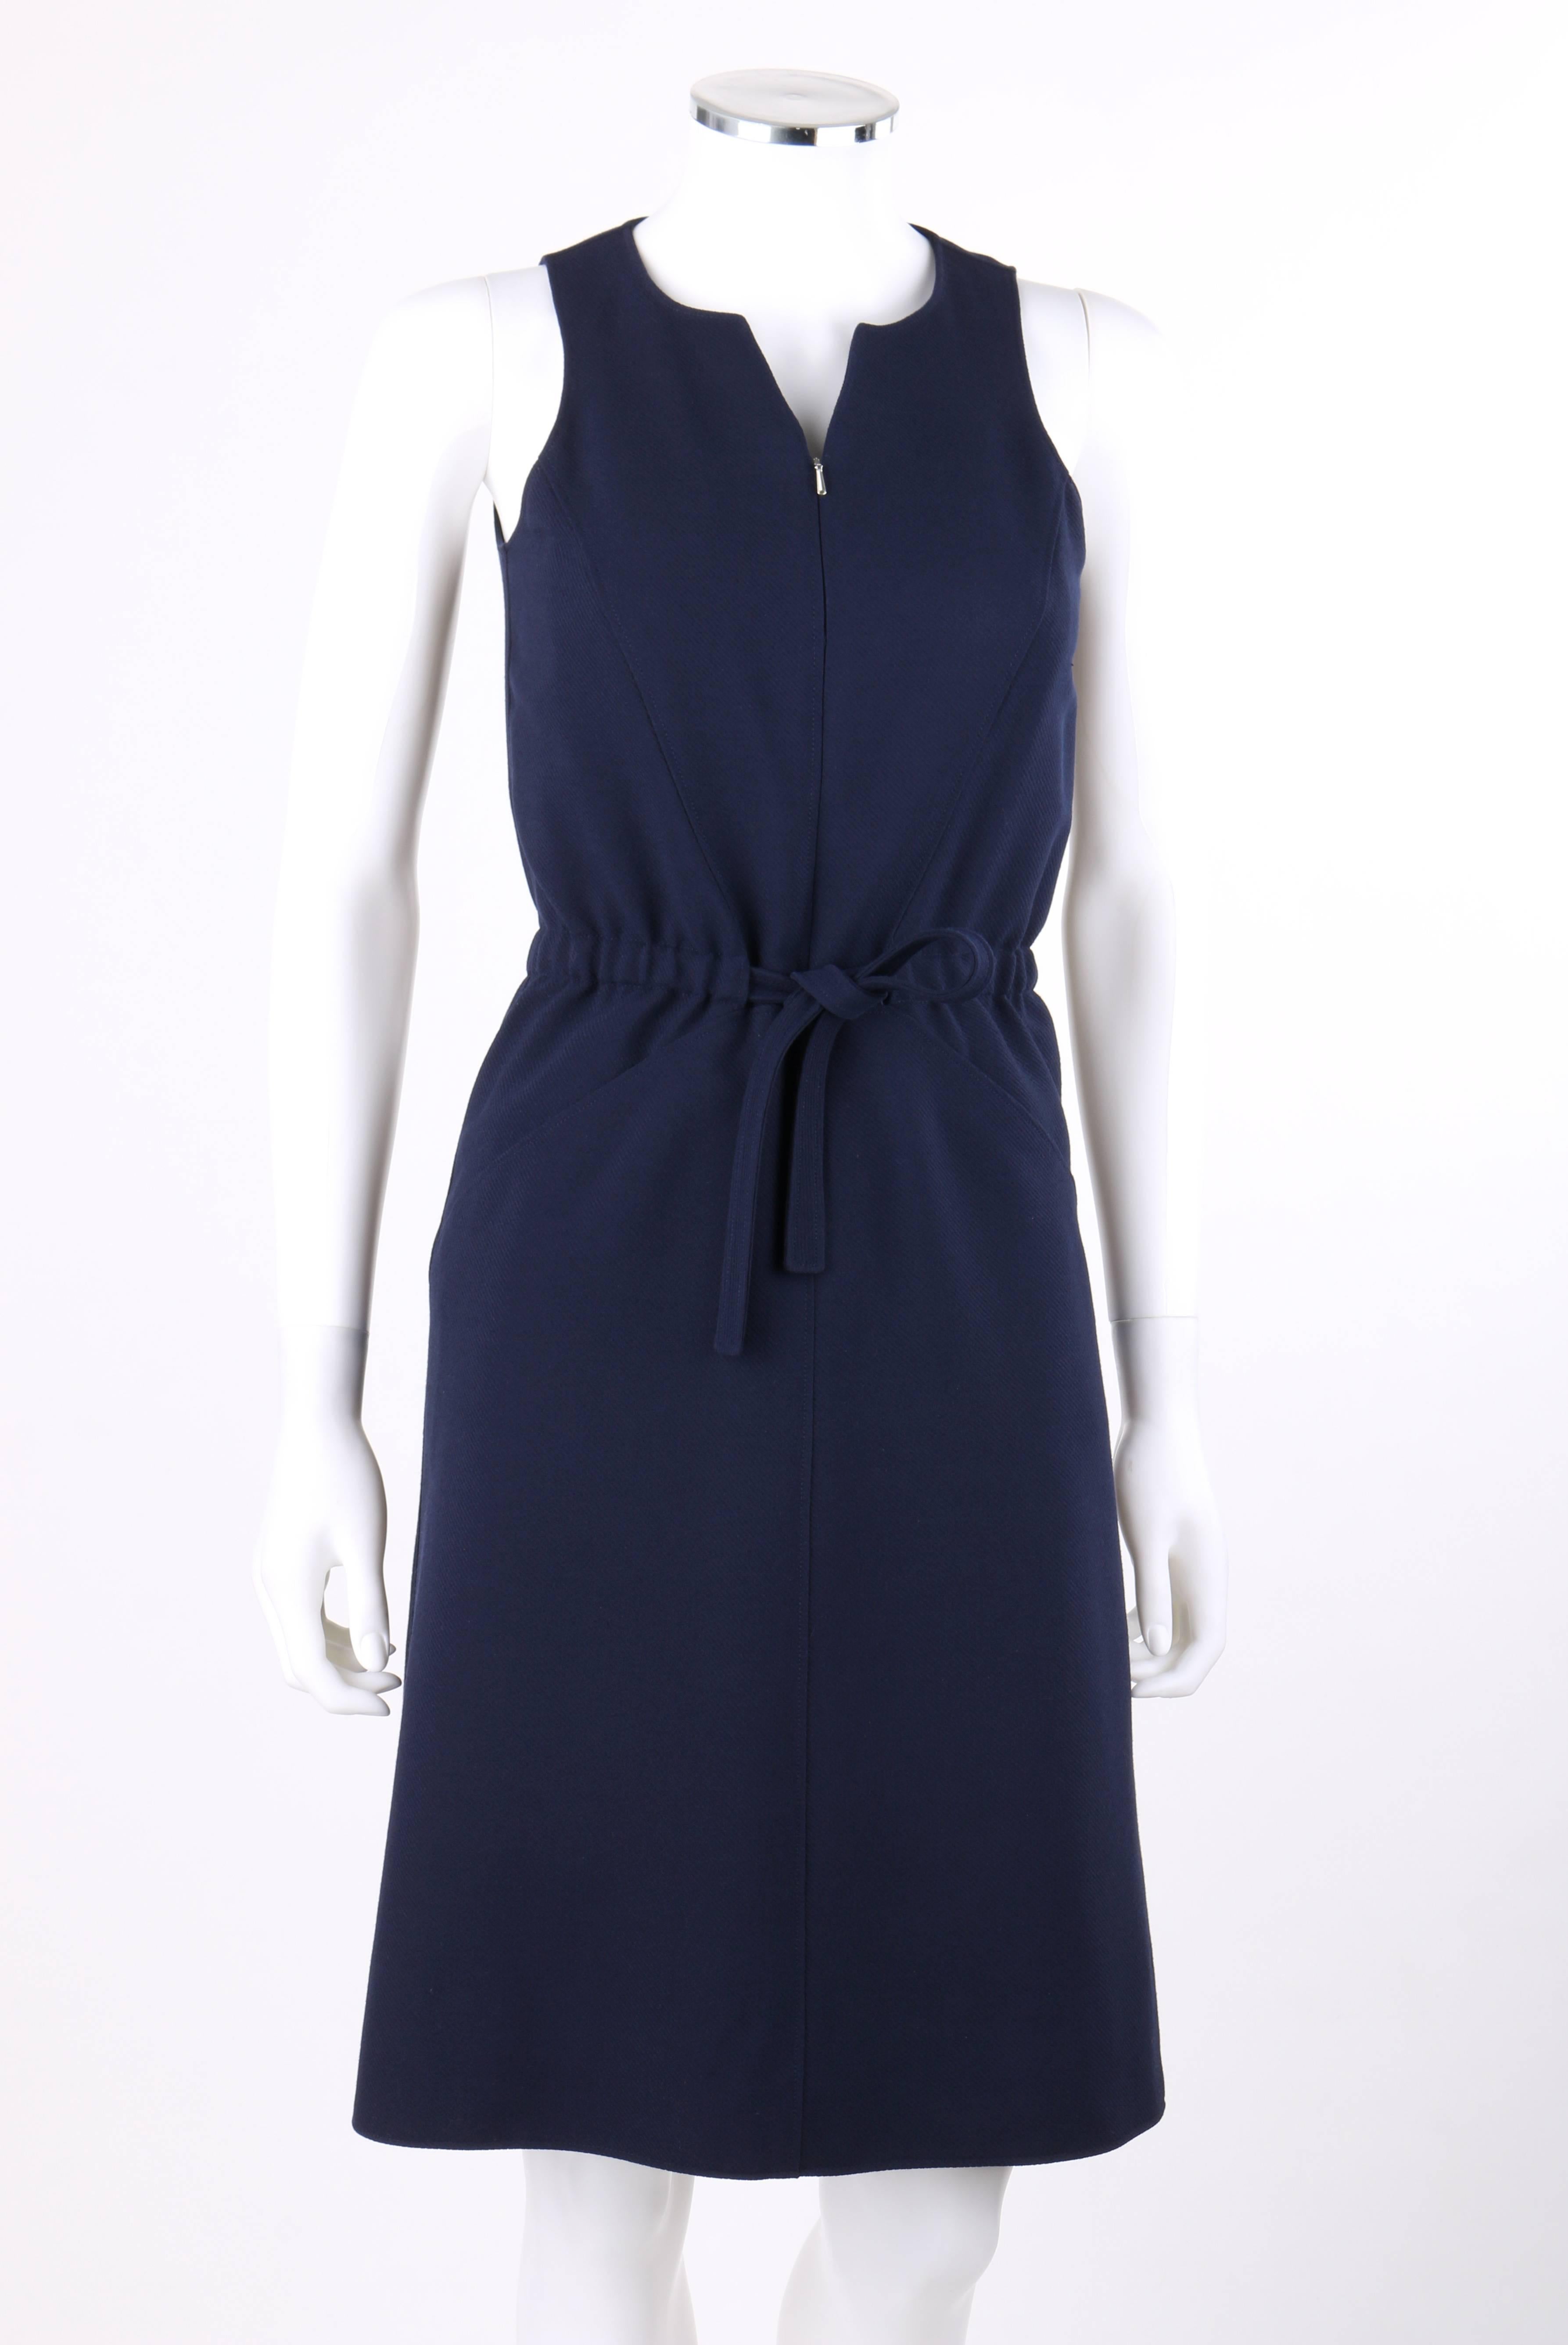 Robe Vintage Courreges Couture Future des années 1960, en laine bleu marine, sans manches et à la taille. Conçu par André Courreges. Encolure fendue. Sans manches. Fermeture à glissière au milieu du devant. Cordon de serrage à la taille avec